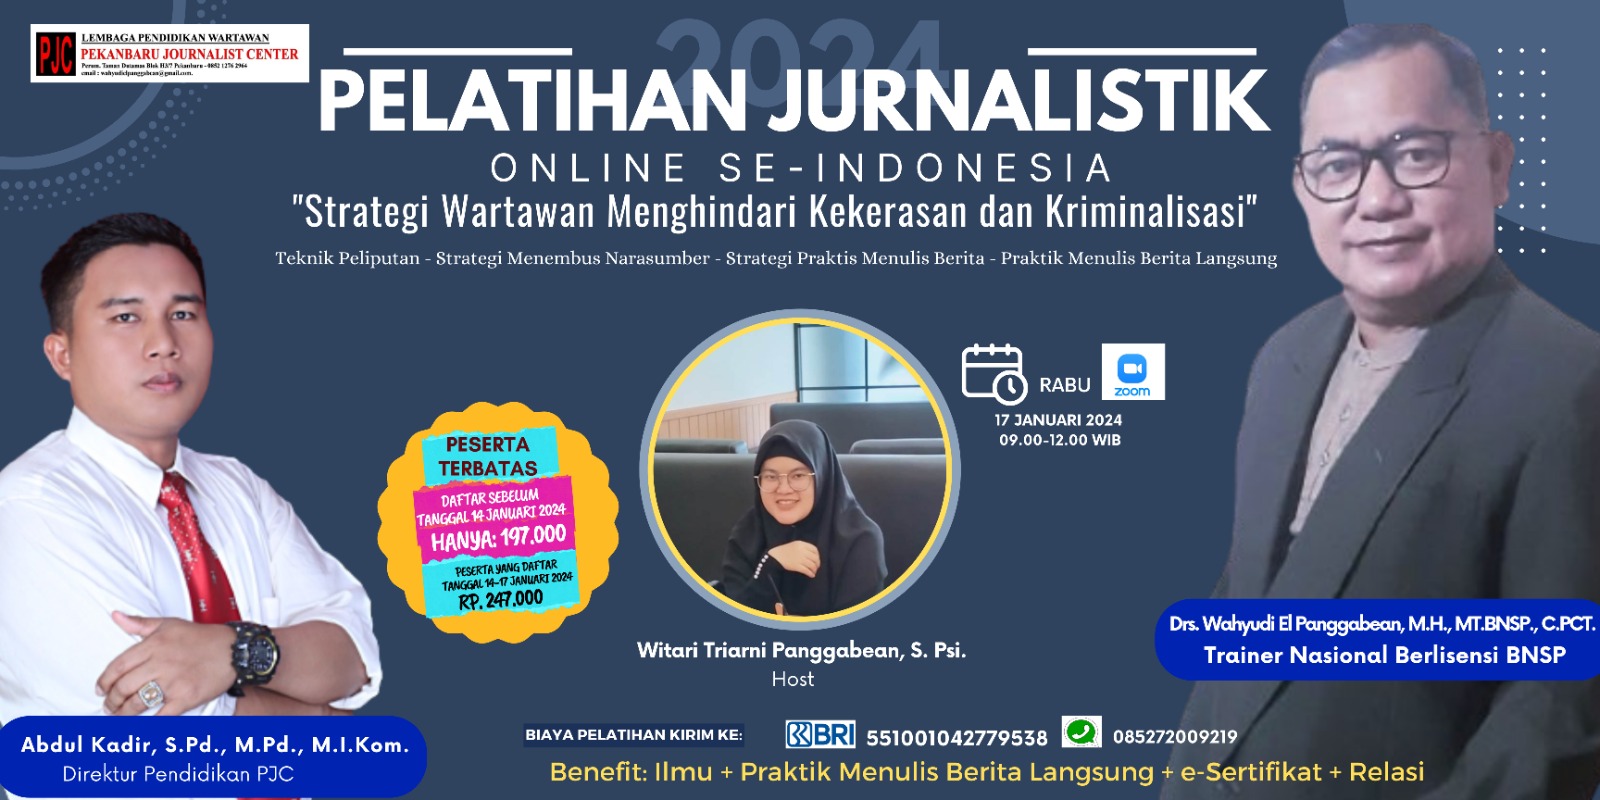 Pendaftaran Dibuka Untuk Umum, PJC Akan Laksanakan Pelatihan Jurnalistik Online Se-Indonesia